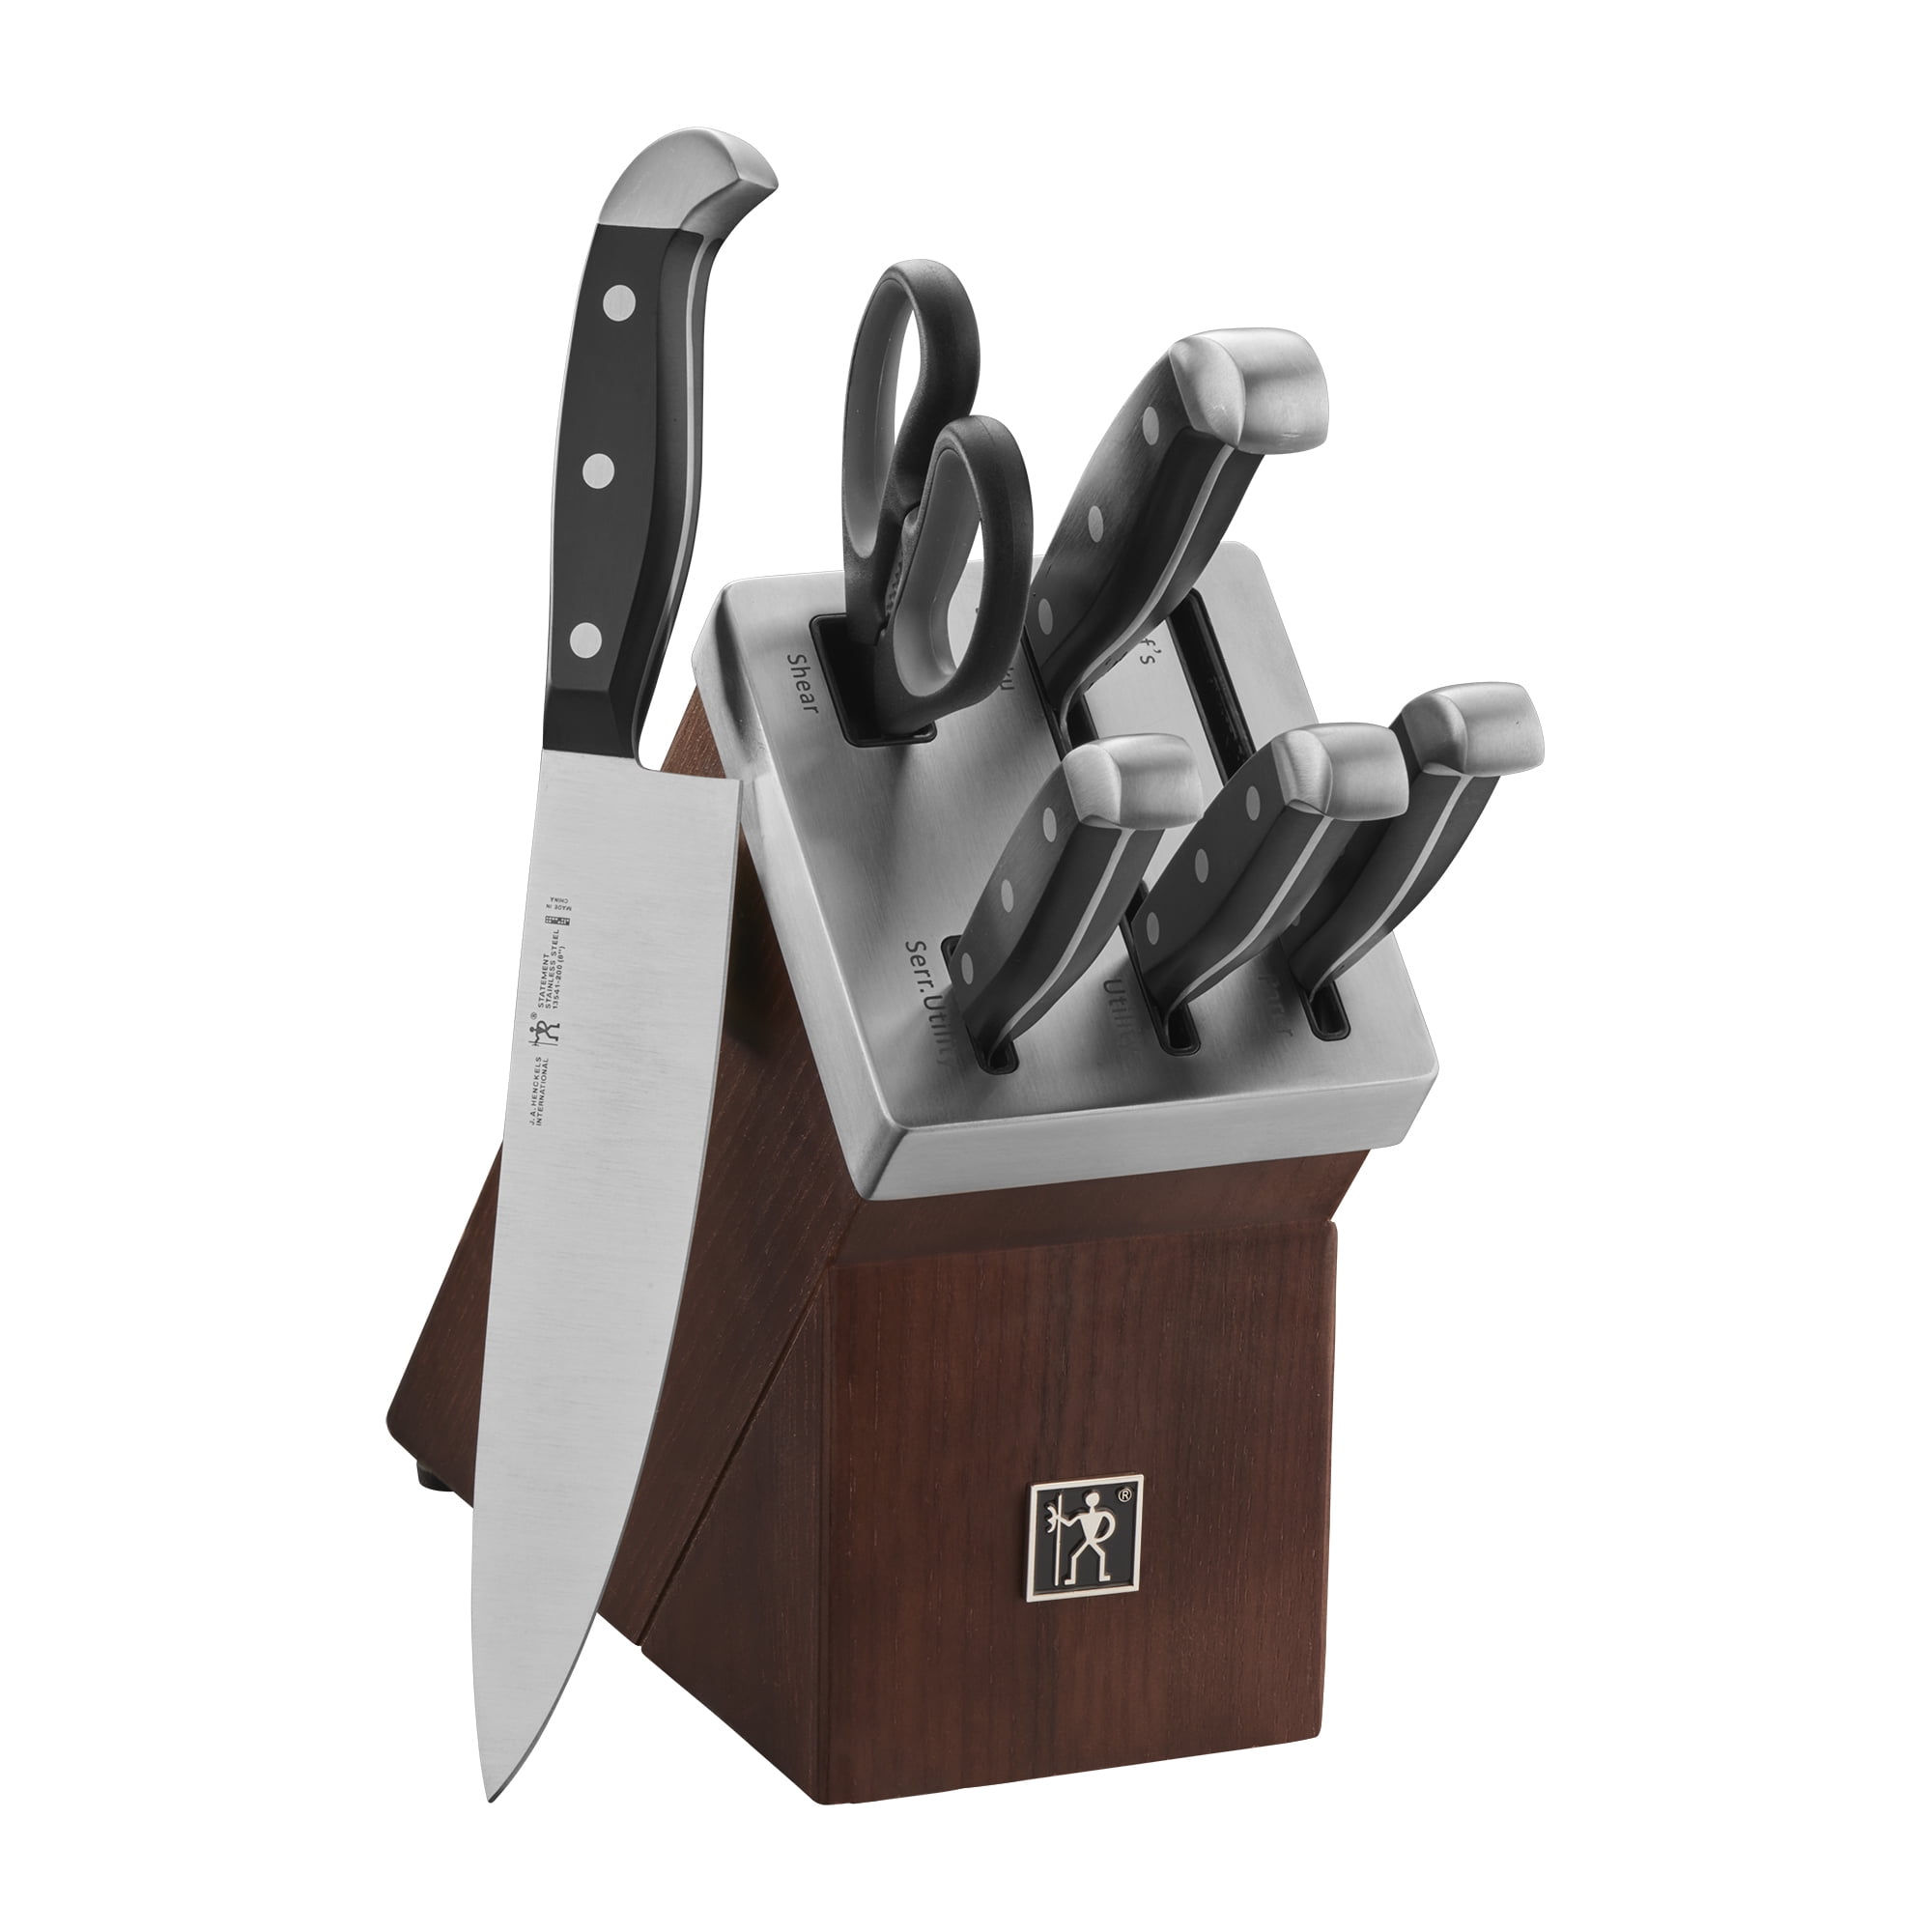 Statement Henckels 14-piece Self-Sharpening Knife Block Set